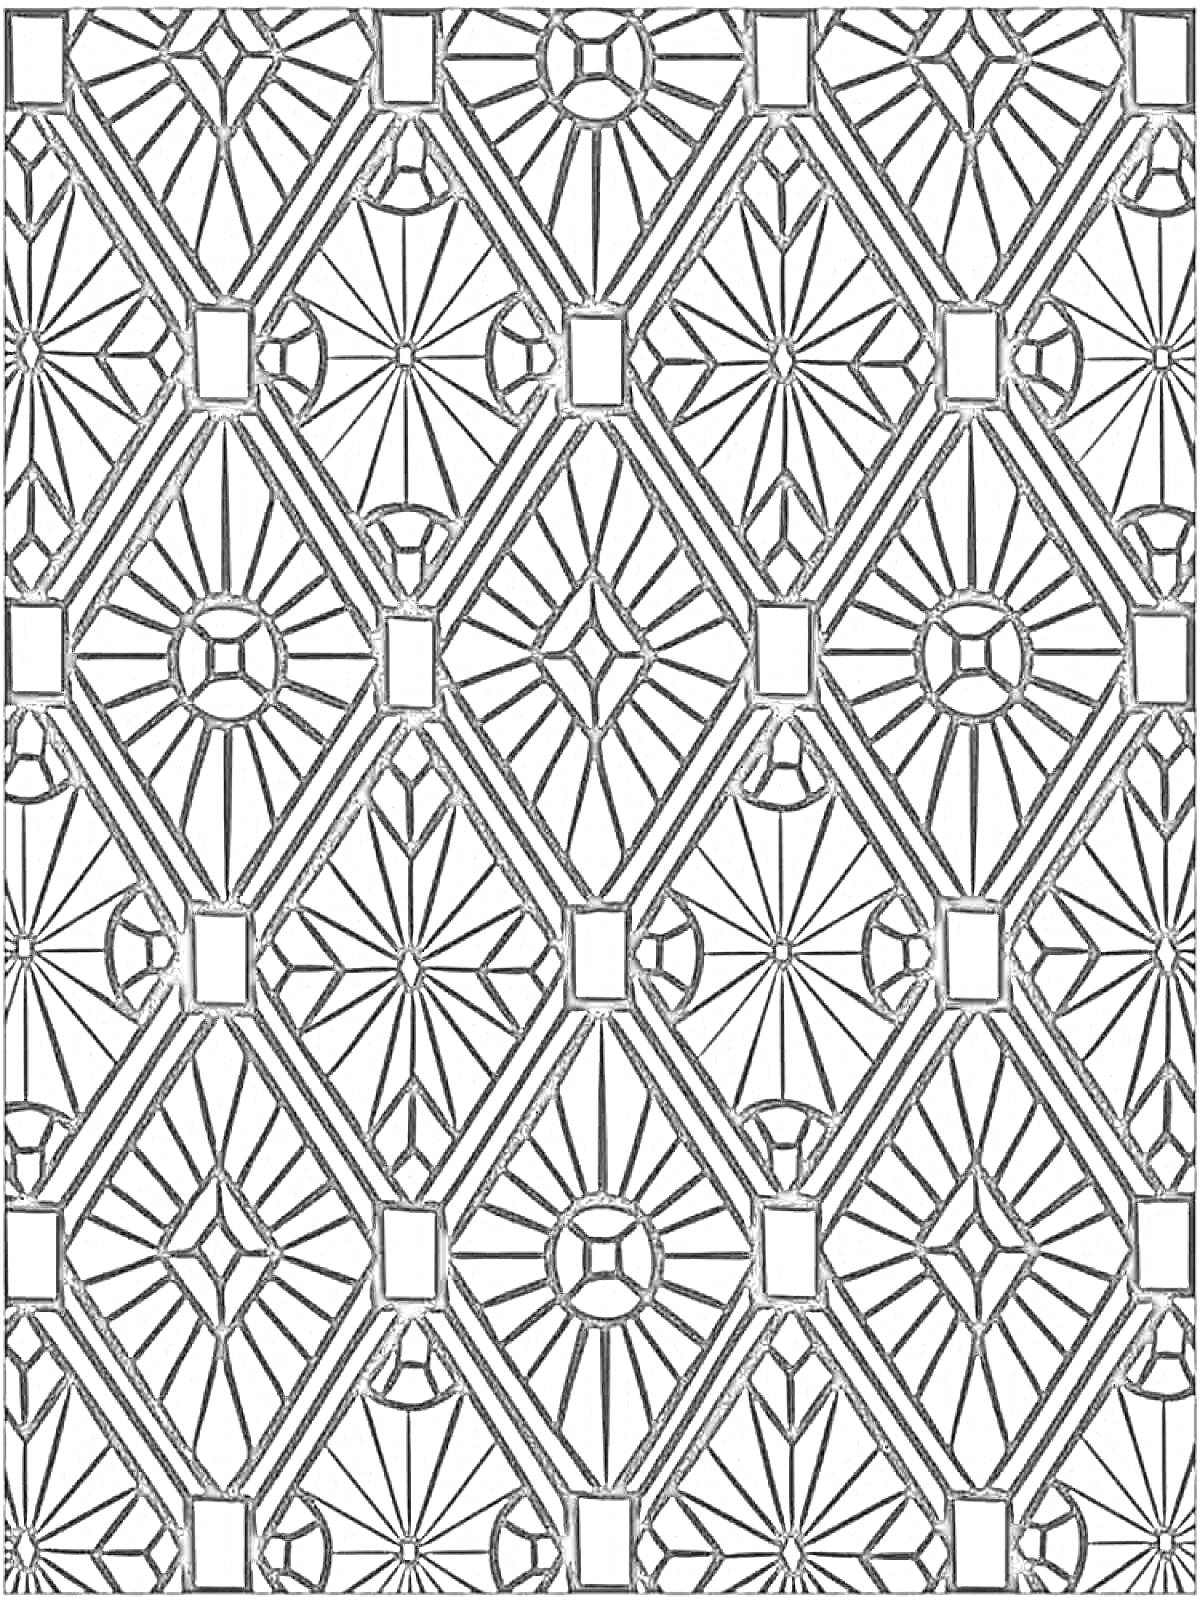 Раскраска Симметричная мозаика с прямоугольниками, кругами и лучами